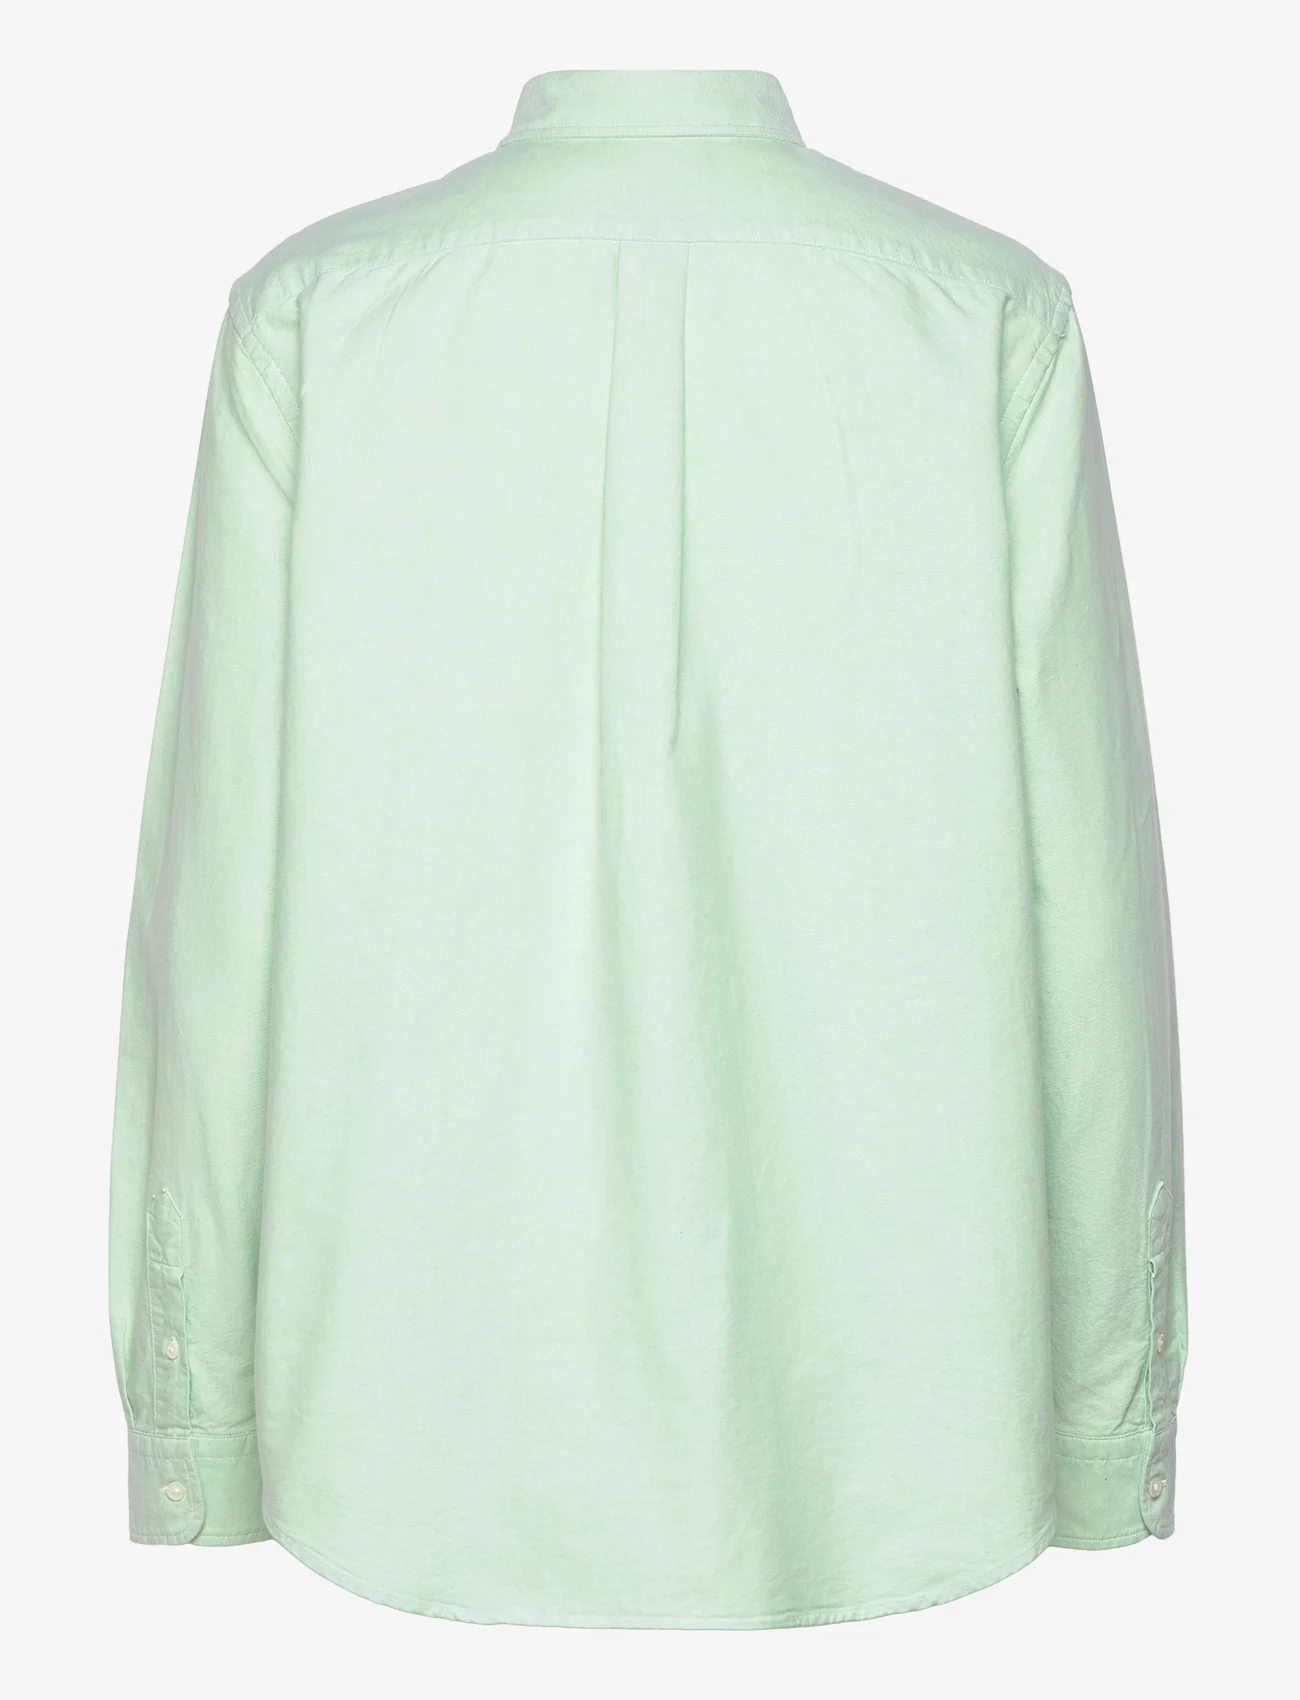 Polo Ralph Lauren - Relaxed Fit Cotton Oxford Shirt - pitkähihaiset kauluspaidat - lime drop - 1